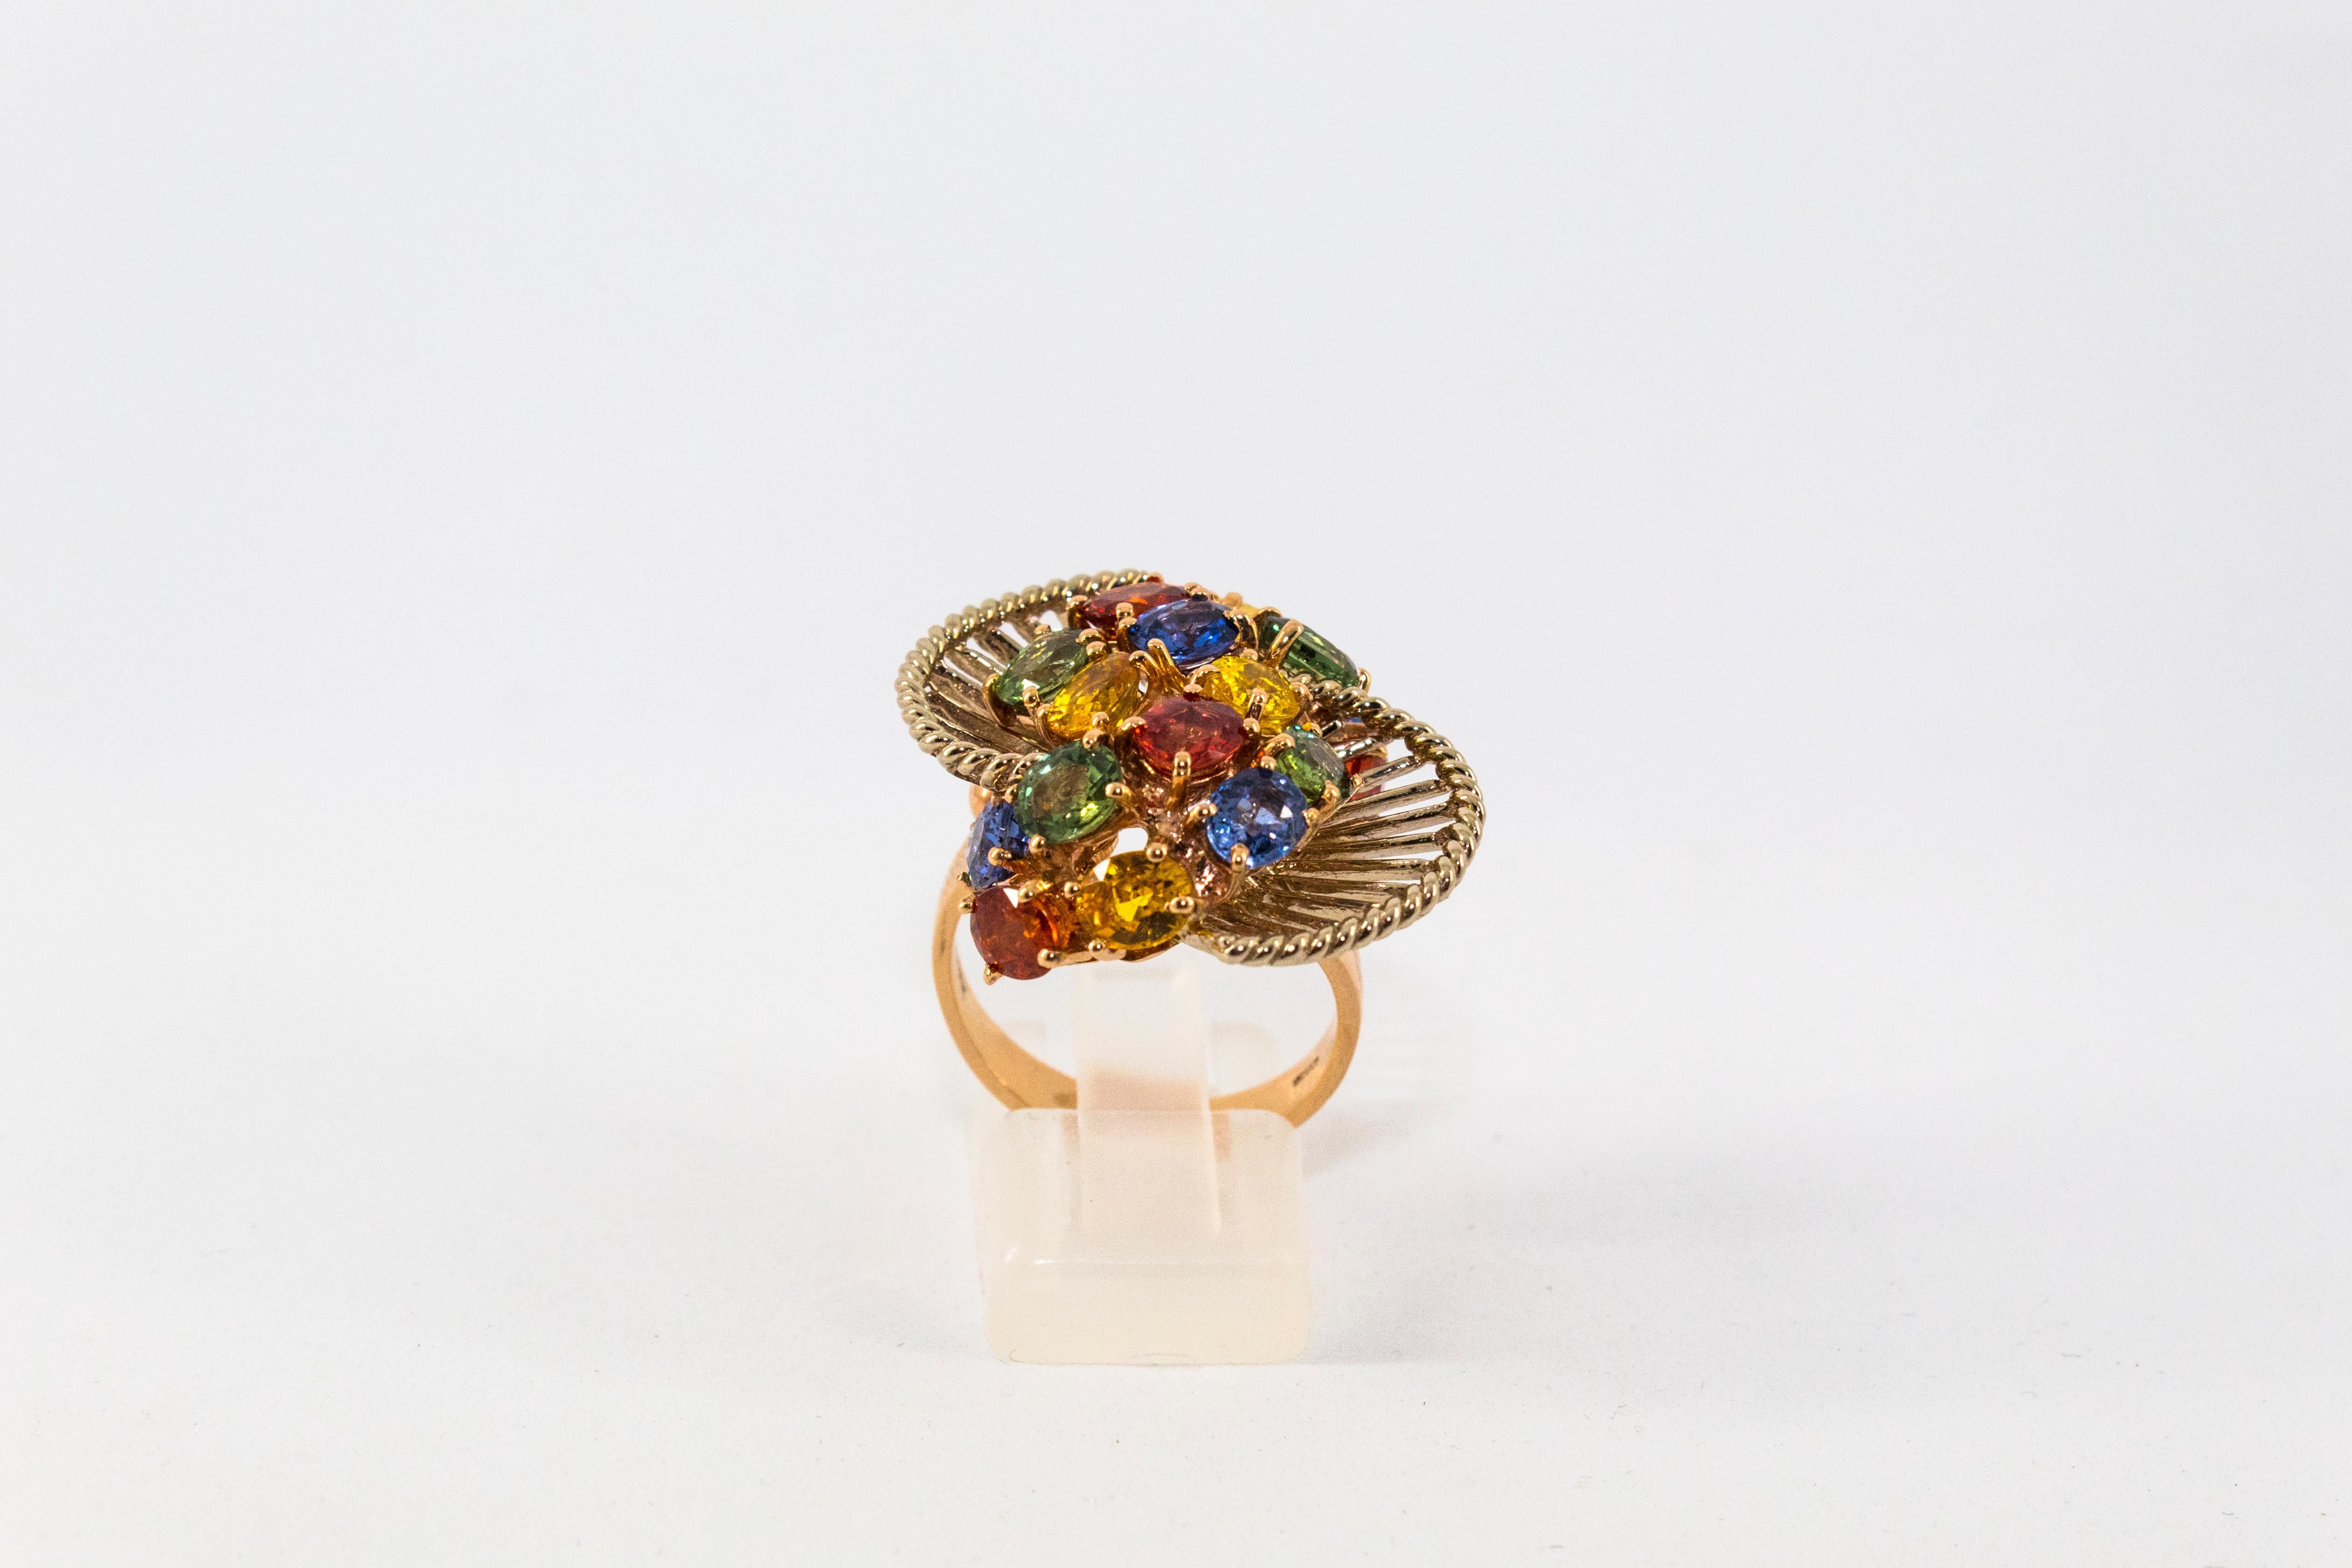 Dieser Ring ist aus 14K Gelbgold gefertigt.
Dieser Ring hat 7,00 Karat grüne, gelbe und blaue Saphire.

Dieser Ring ist vom Art Deco inspiriert.

Größe ITA: 16 USA: 7.5

Da wir eine Werkstatt sind, ist jedes Stück handgefertigt, anpassbar und in der